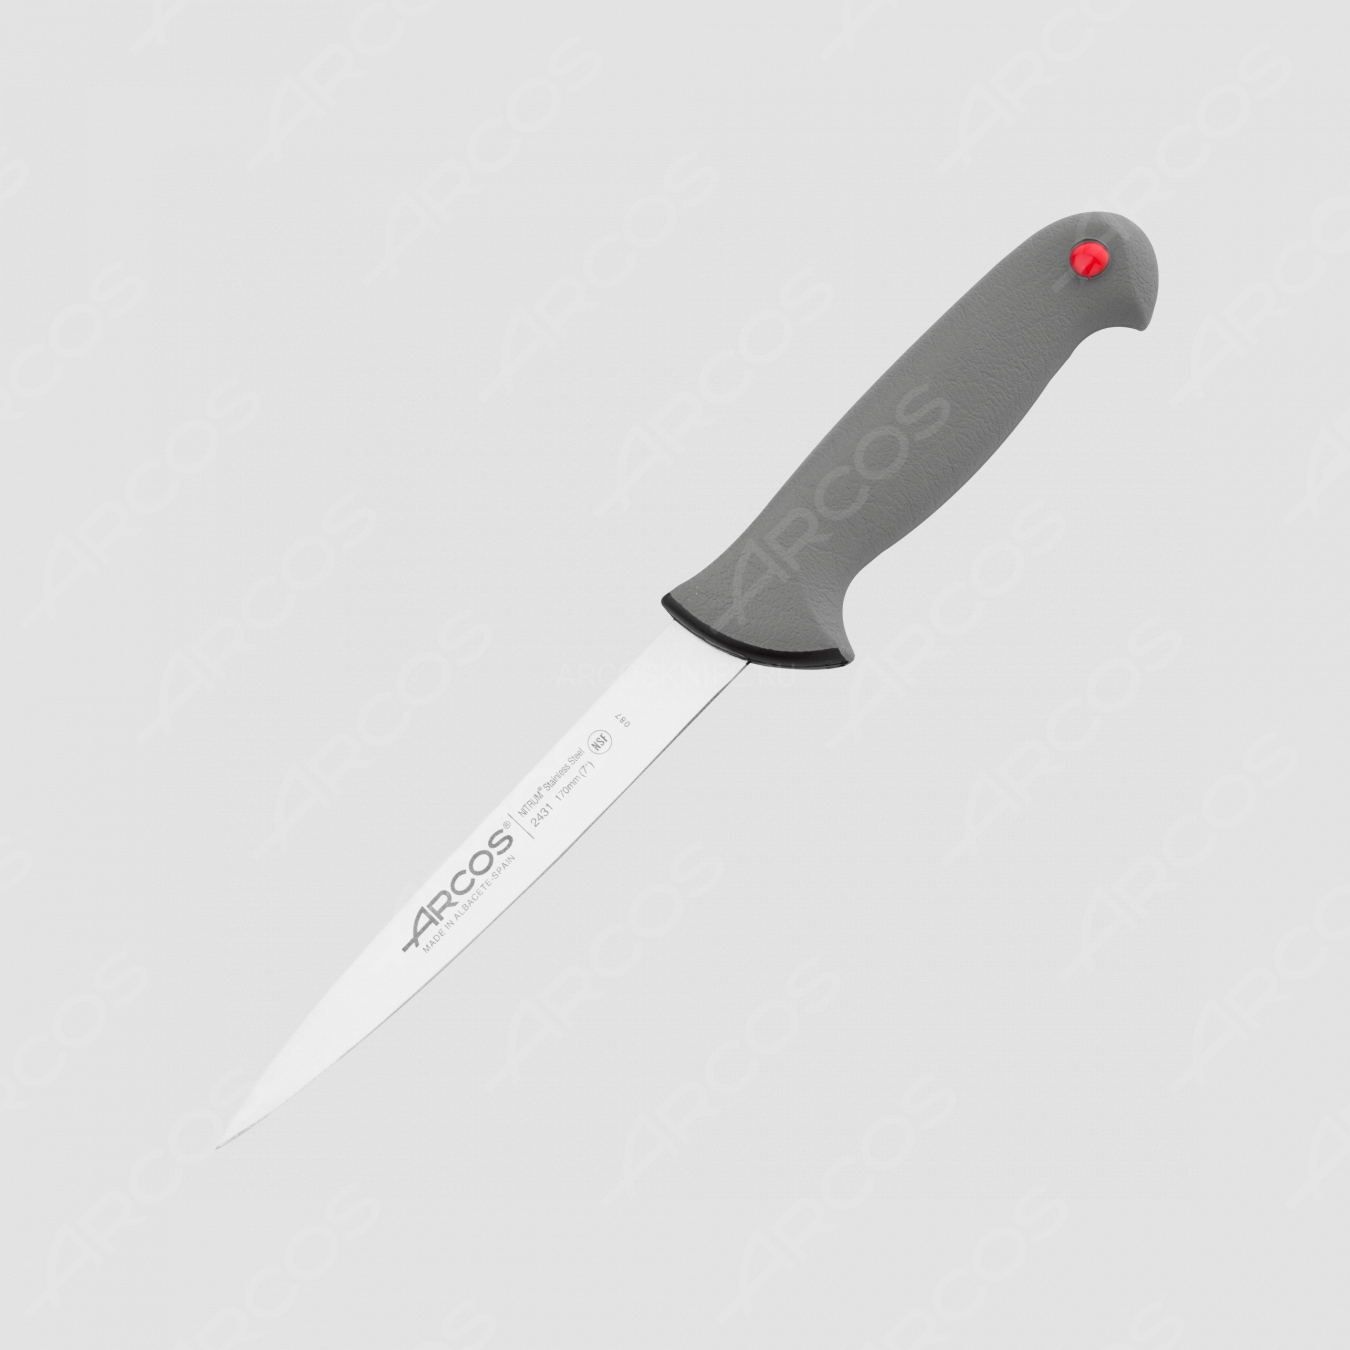 Нож кухонный разделочный 17 см, серия Colour-prof, ARCOS, Испания